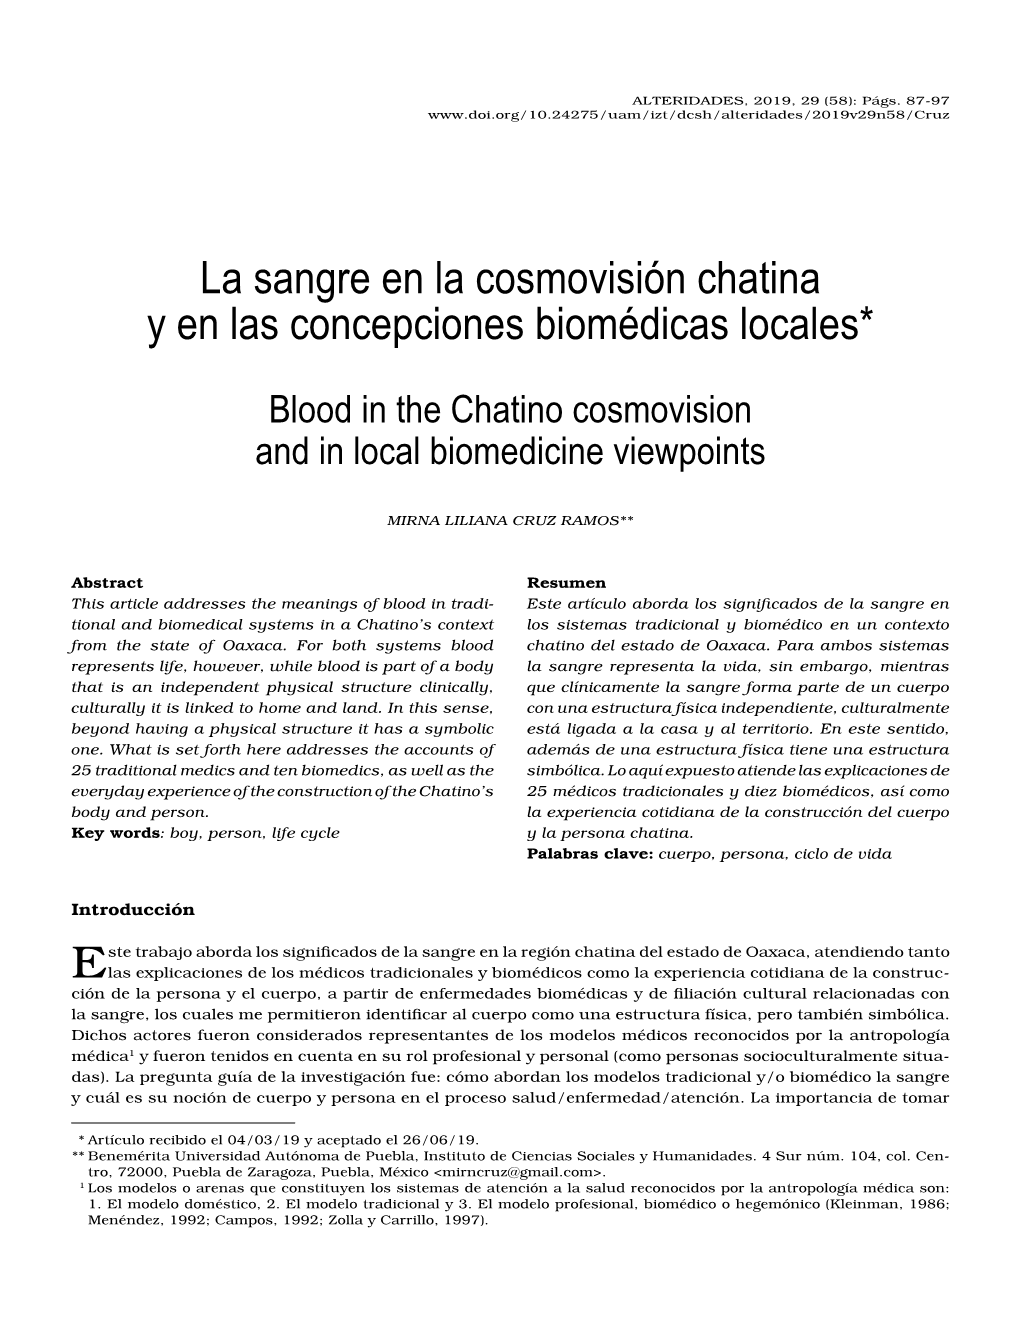 La Sangre En La Cosmovisión Chatina Y En Las Concepciones Biomédicas Locales*